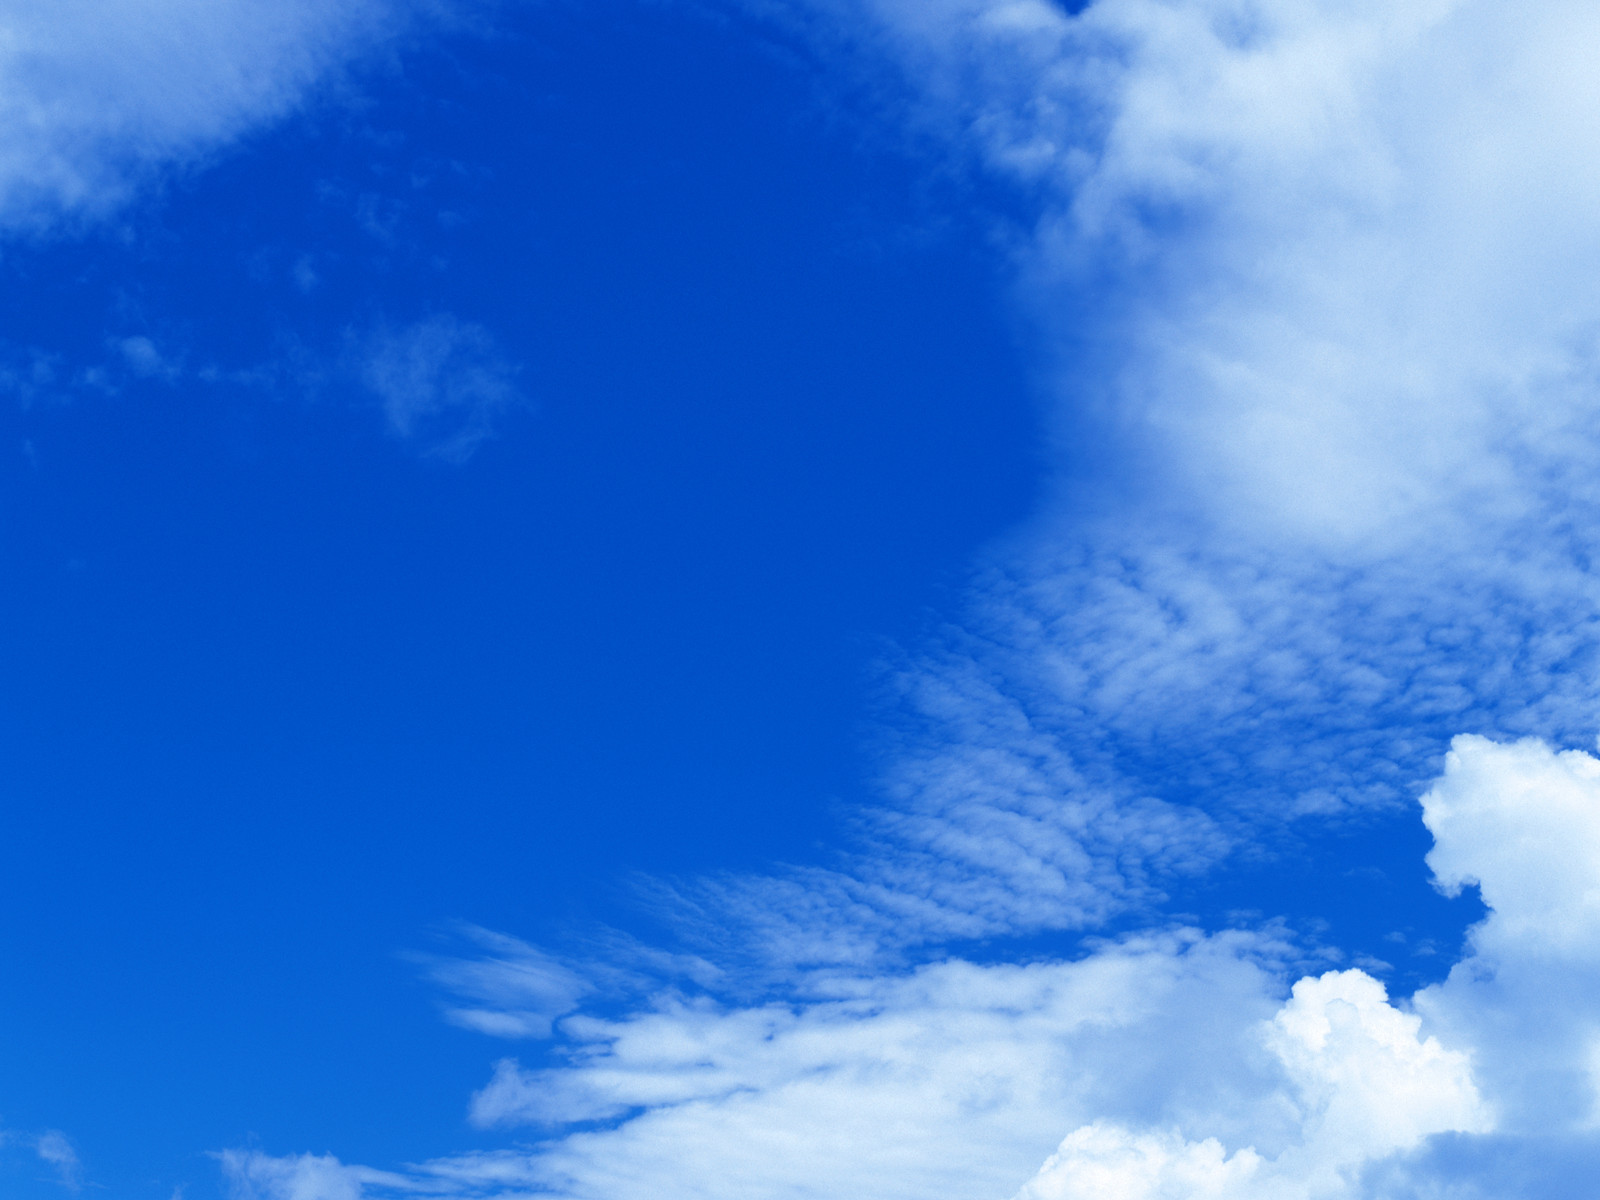 壁纸1600x1200 天空白云图片 天空云彩壁纸 蔚蓝天空-蓝天白云壁纸壁纸 蔚蓝天空-蓝天白云壁纸图片 蔚蓝天空-蓝天白云壁纸素材 风景壁纸 风景图库 风景图片素材桌面壁纸